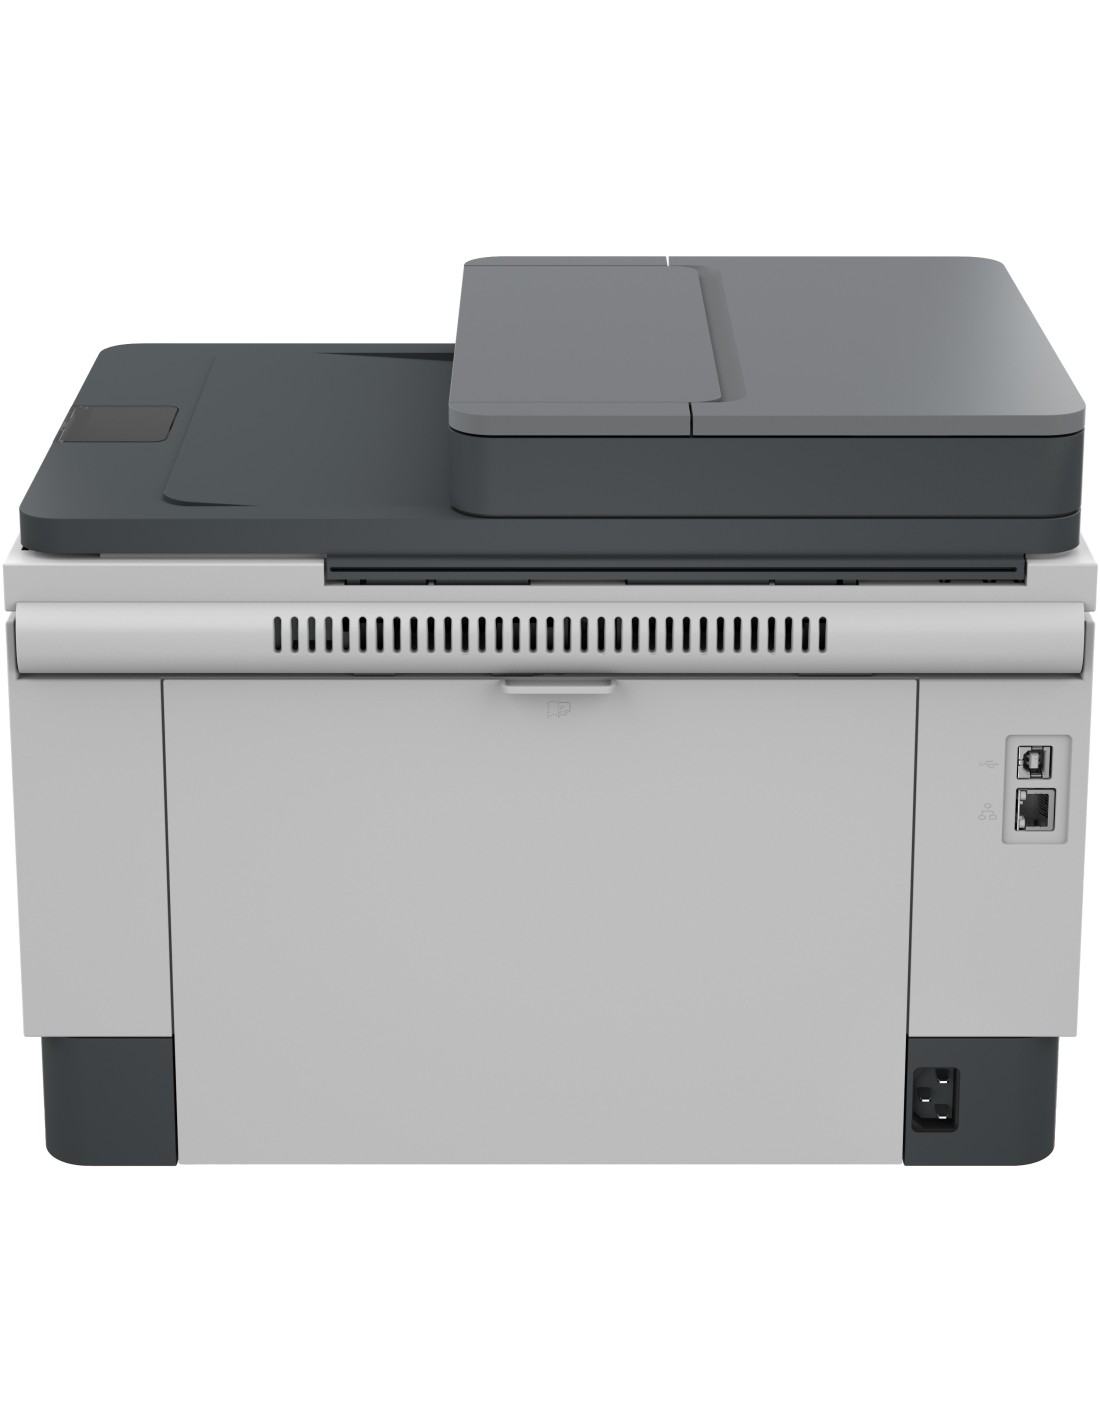 HP LaserJet Stampante multifunzione Tank 2604sdw, Bianco e nero, Stampante  per Aziendale, Stampa fronte/retro Scansione verso